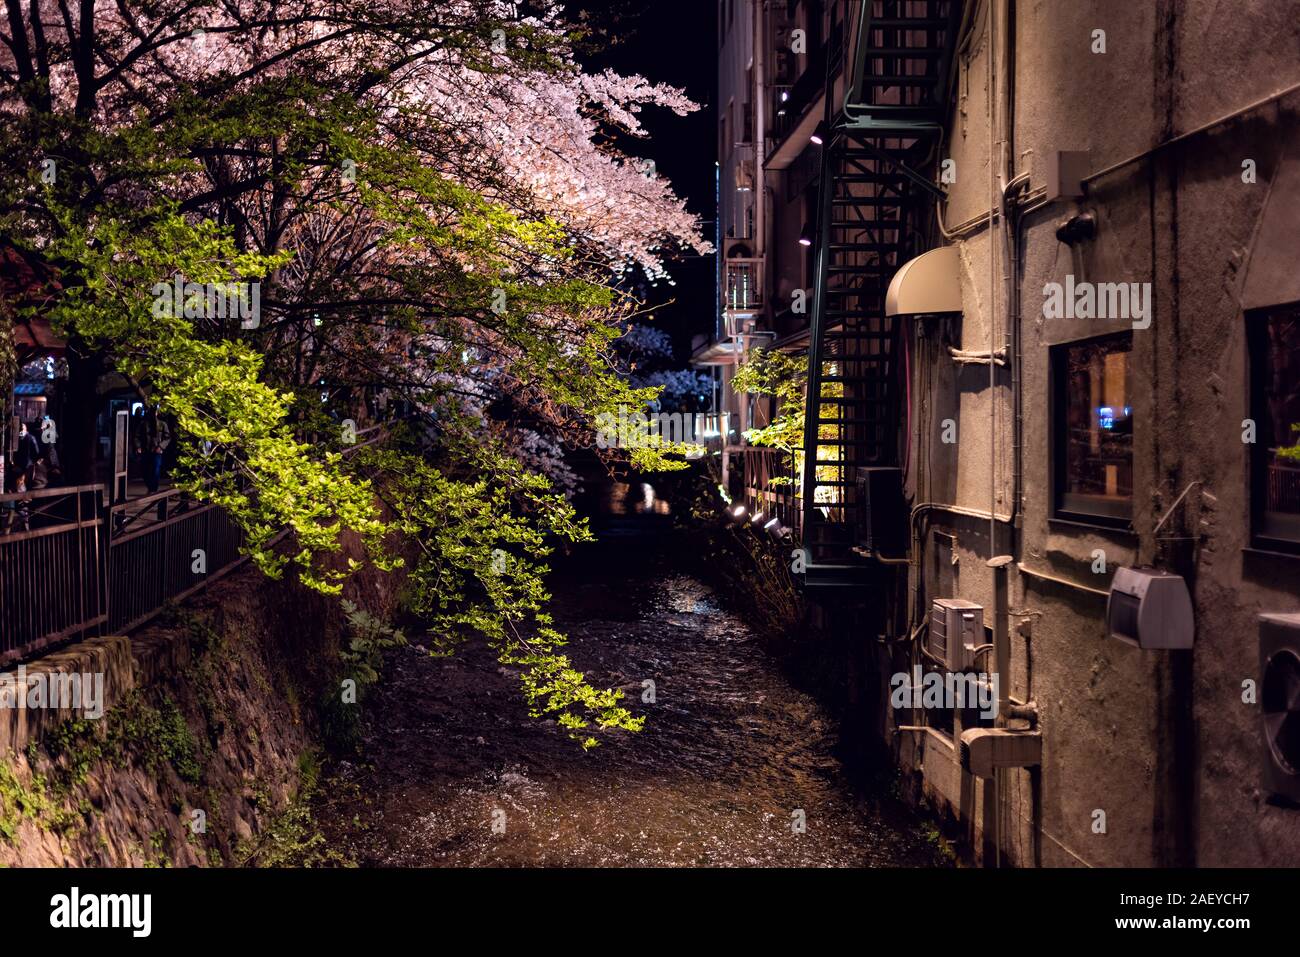 Kyoto, Japan beleuchtet glühende Cherry Blossom sakura Blumen und Bäume am Ufer des Flusses Kanal in Gion in der Nacht während Hanami Festival mit Wasser Oberfläche refle Stockfoto